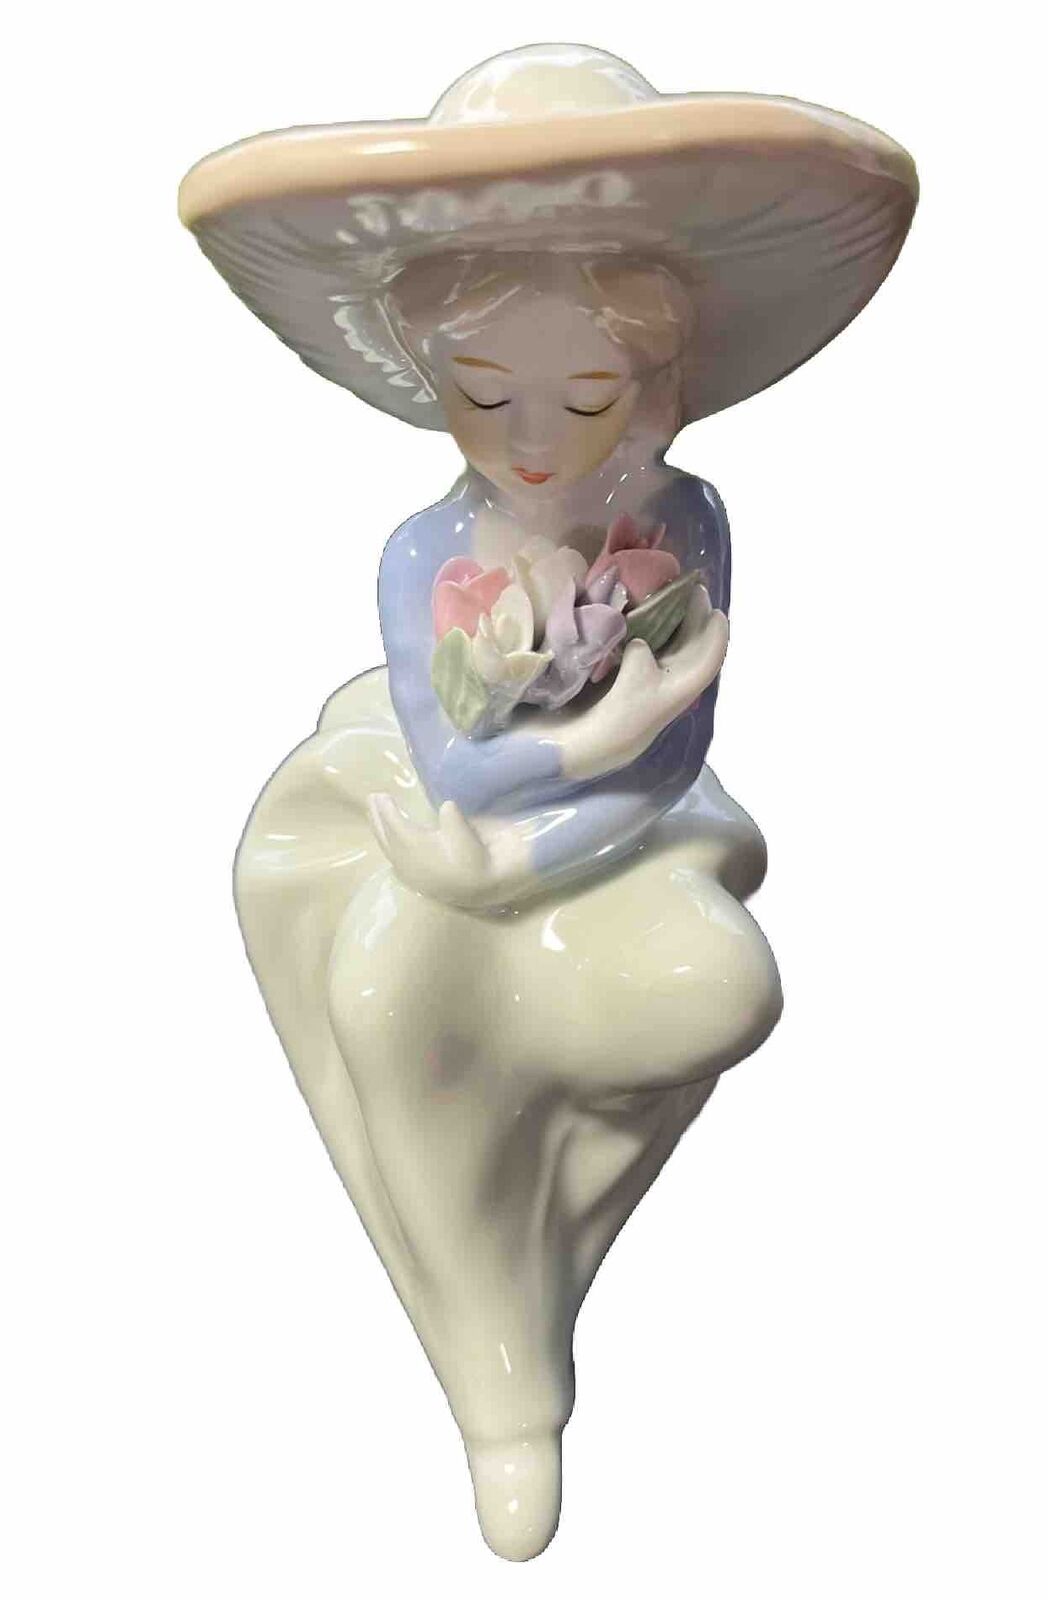 Vintage Demure Porcelain Lady & Tulips Figurine 6.5” Pastel Colors Hat Flowers